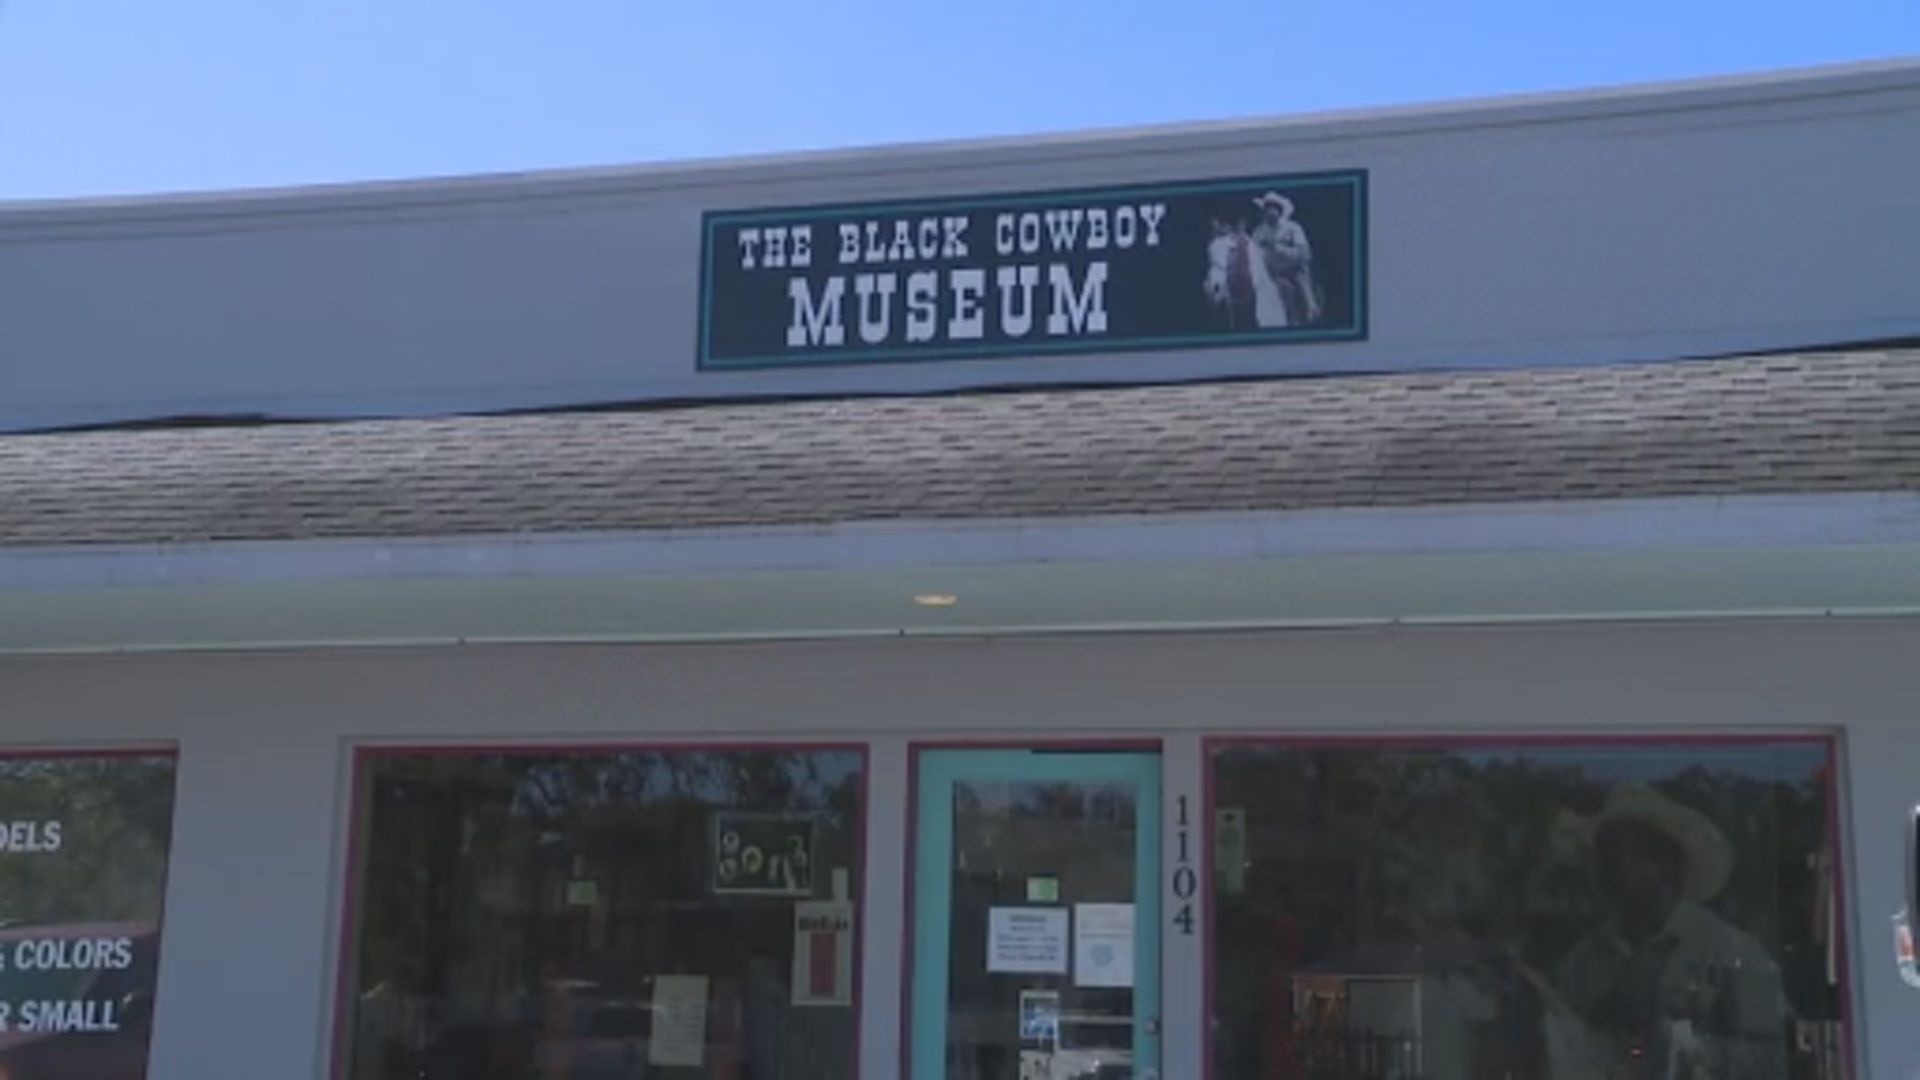 The Black Cowboy Museum